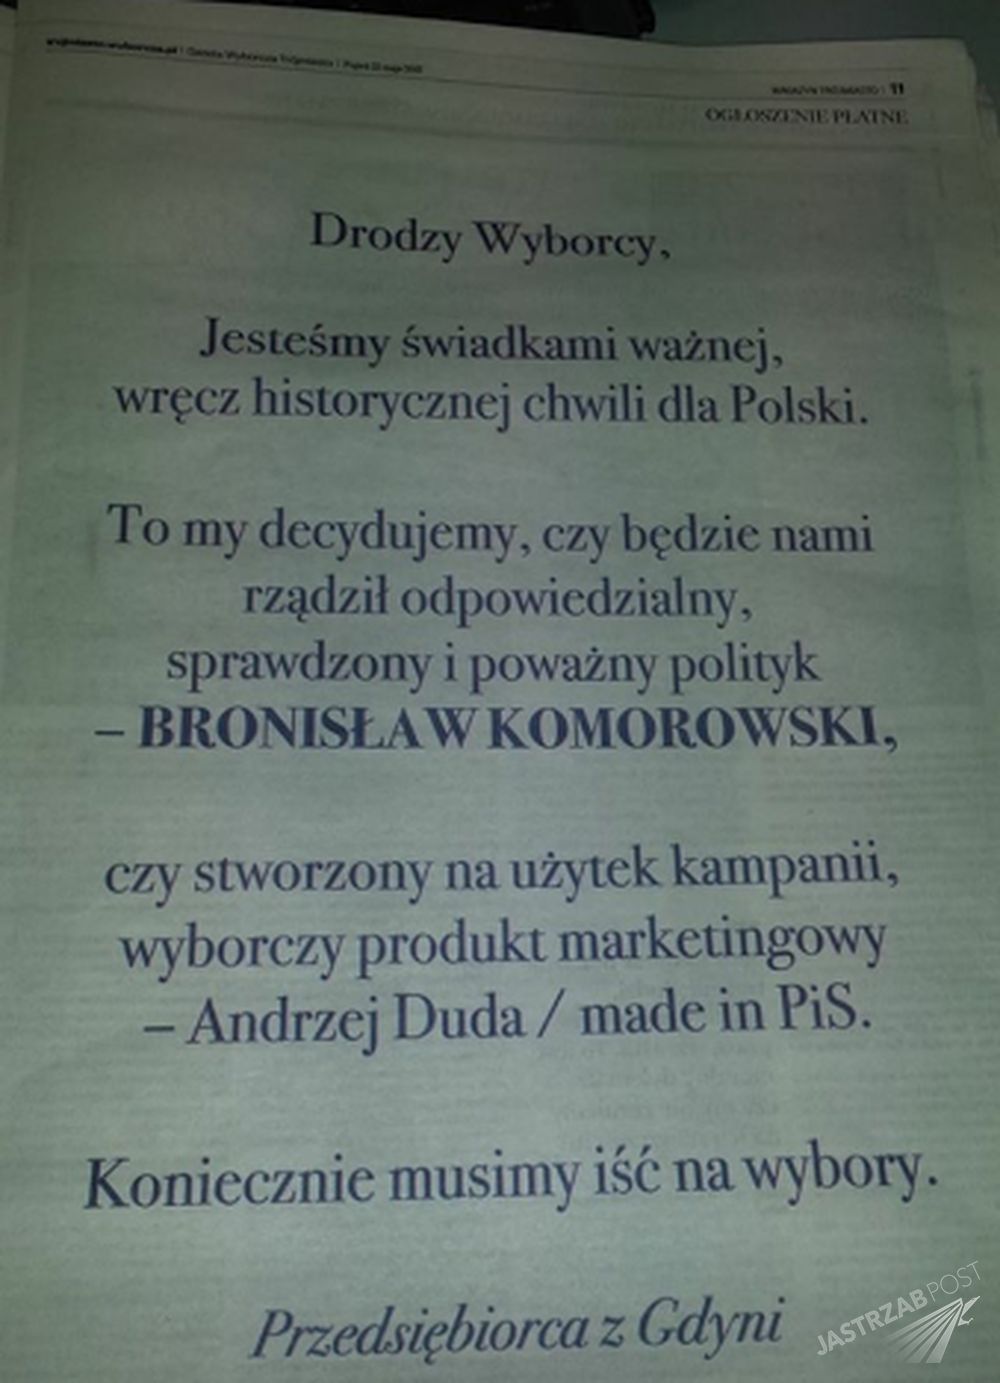 Ogłoszenie w gazecie nawołujące do głosowania na Bronisława Komorowskiego
Fot. screen z Facebook